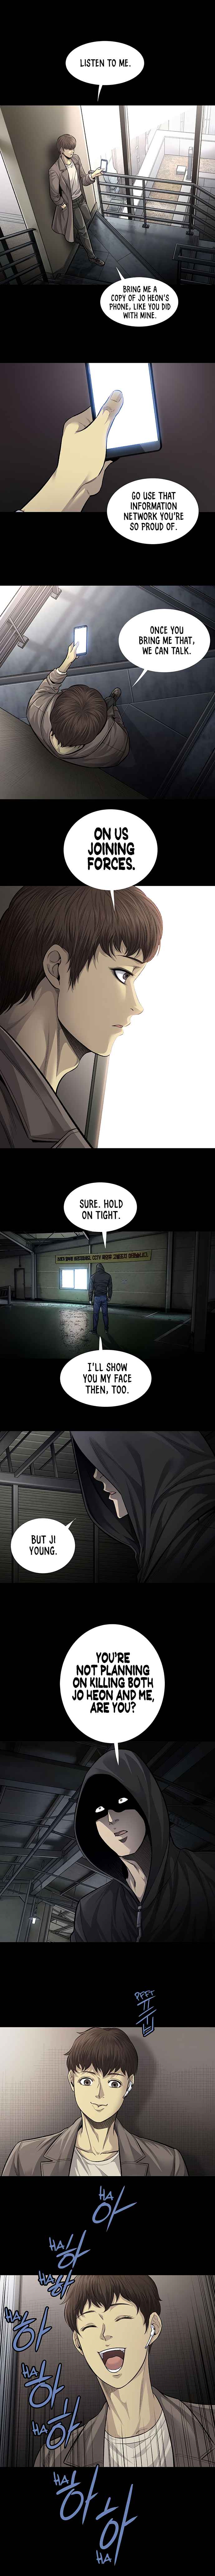 Vigilante (Crg) - Page 3